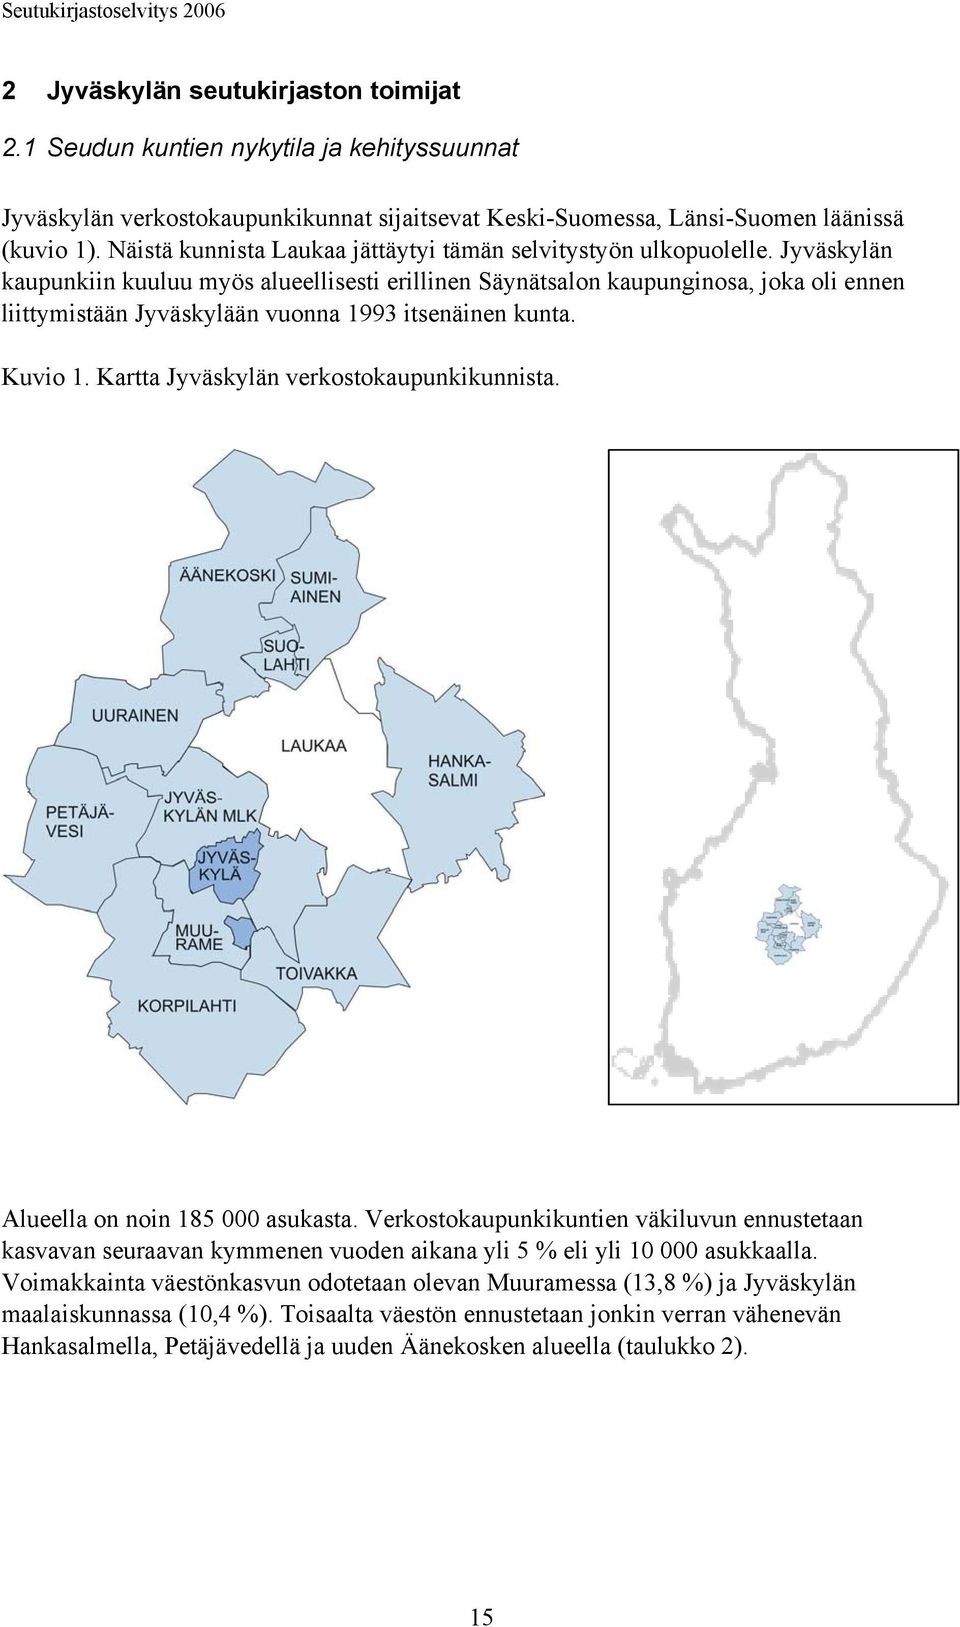 Jyväskylän kaupunkiin kuuluu myös alueellisesti erillinen Säynätsalon kaupunginosa, joka oli ennen liittymistään Jyväskylään vuonna 1993 itsenäinen kunta. Kuvio 1.